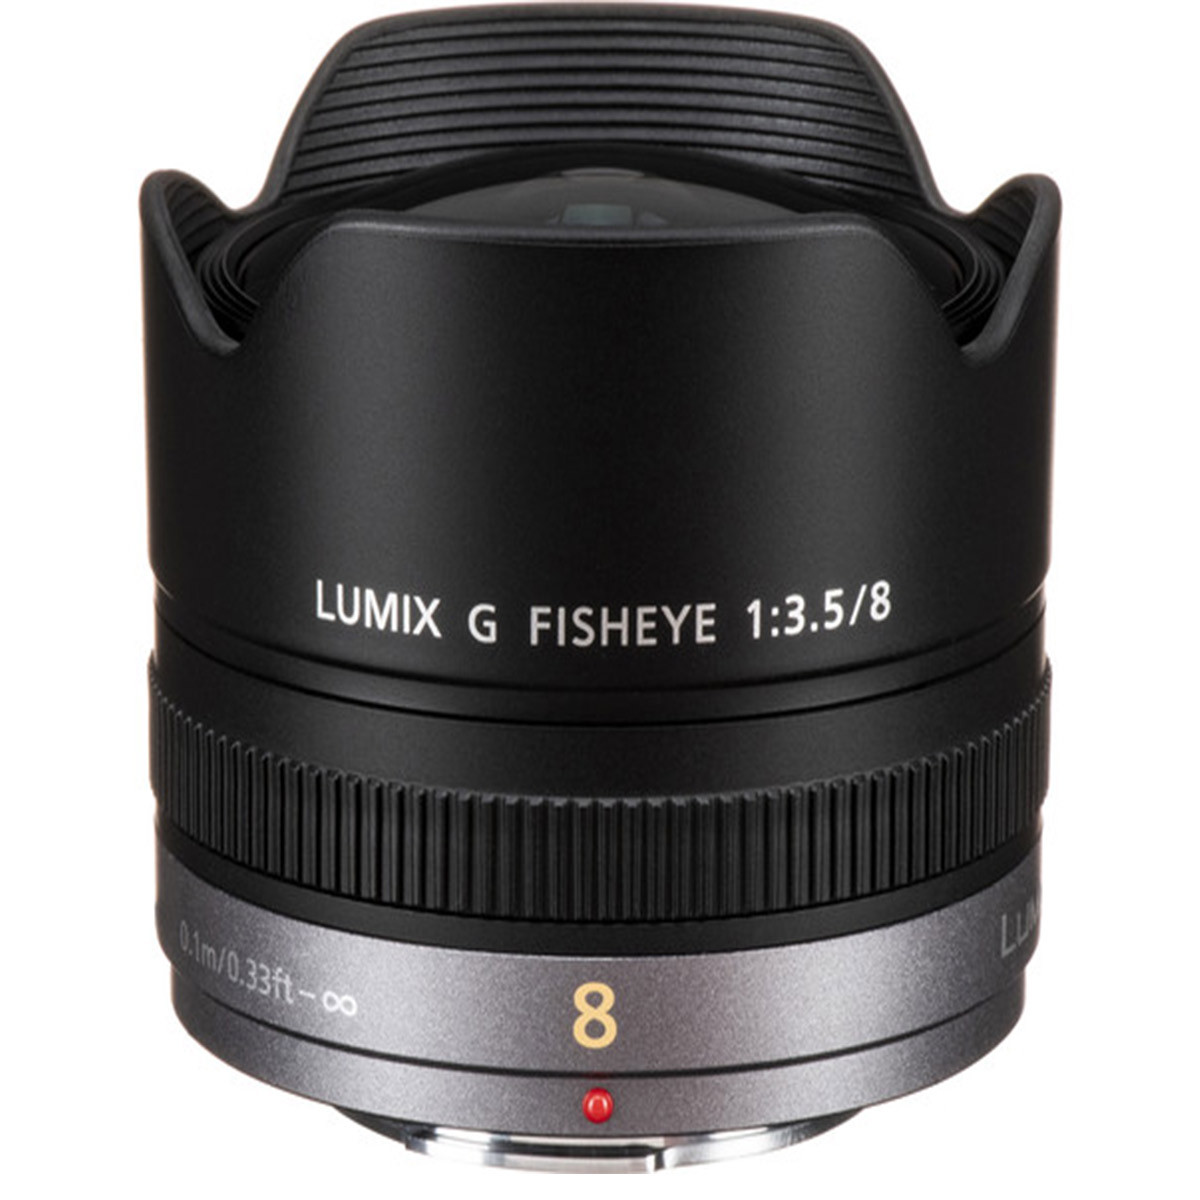 Panasonic LUMIX 8mm F3.5 G FISHEYE